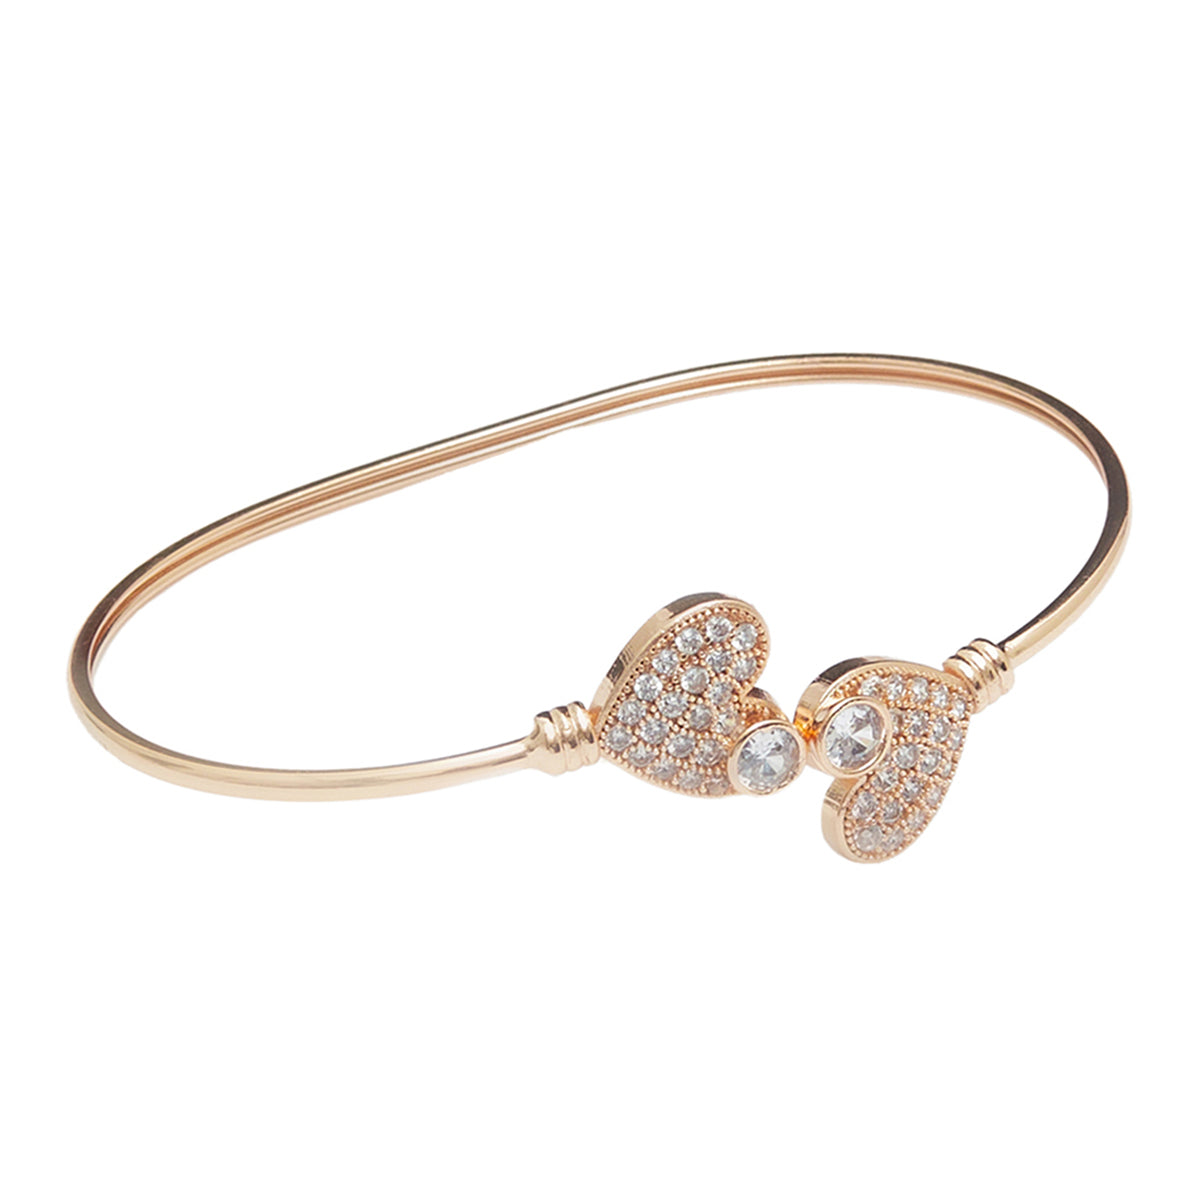 Rose Gold Bracelet with Heart Design